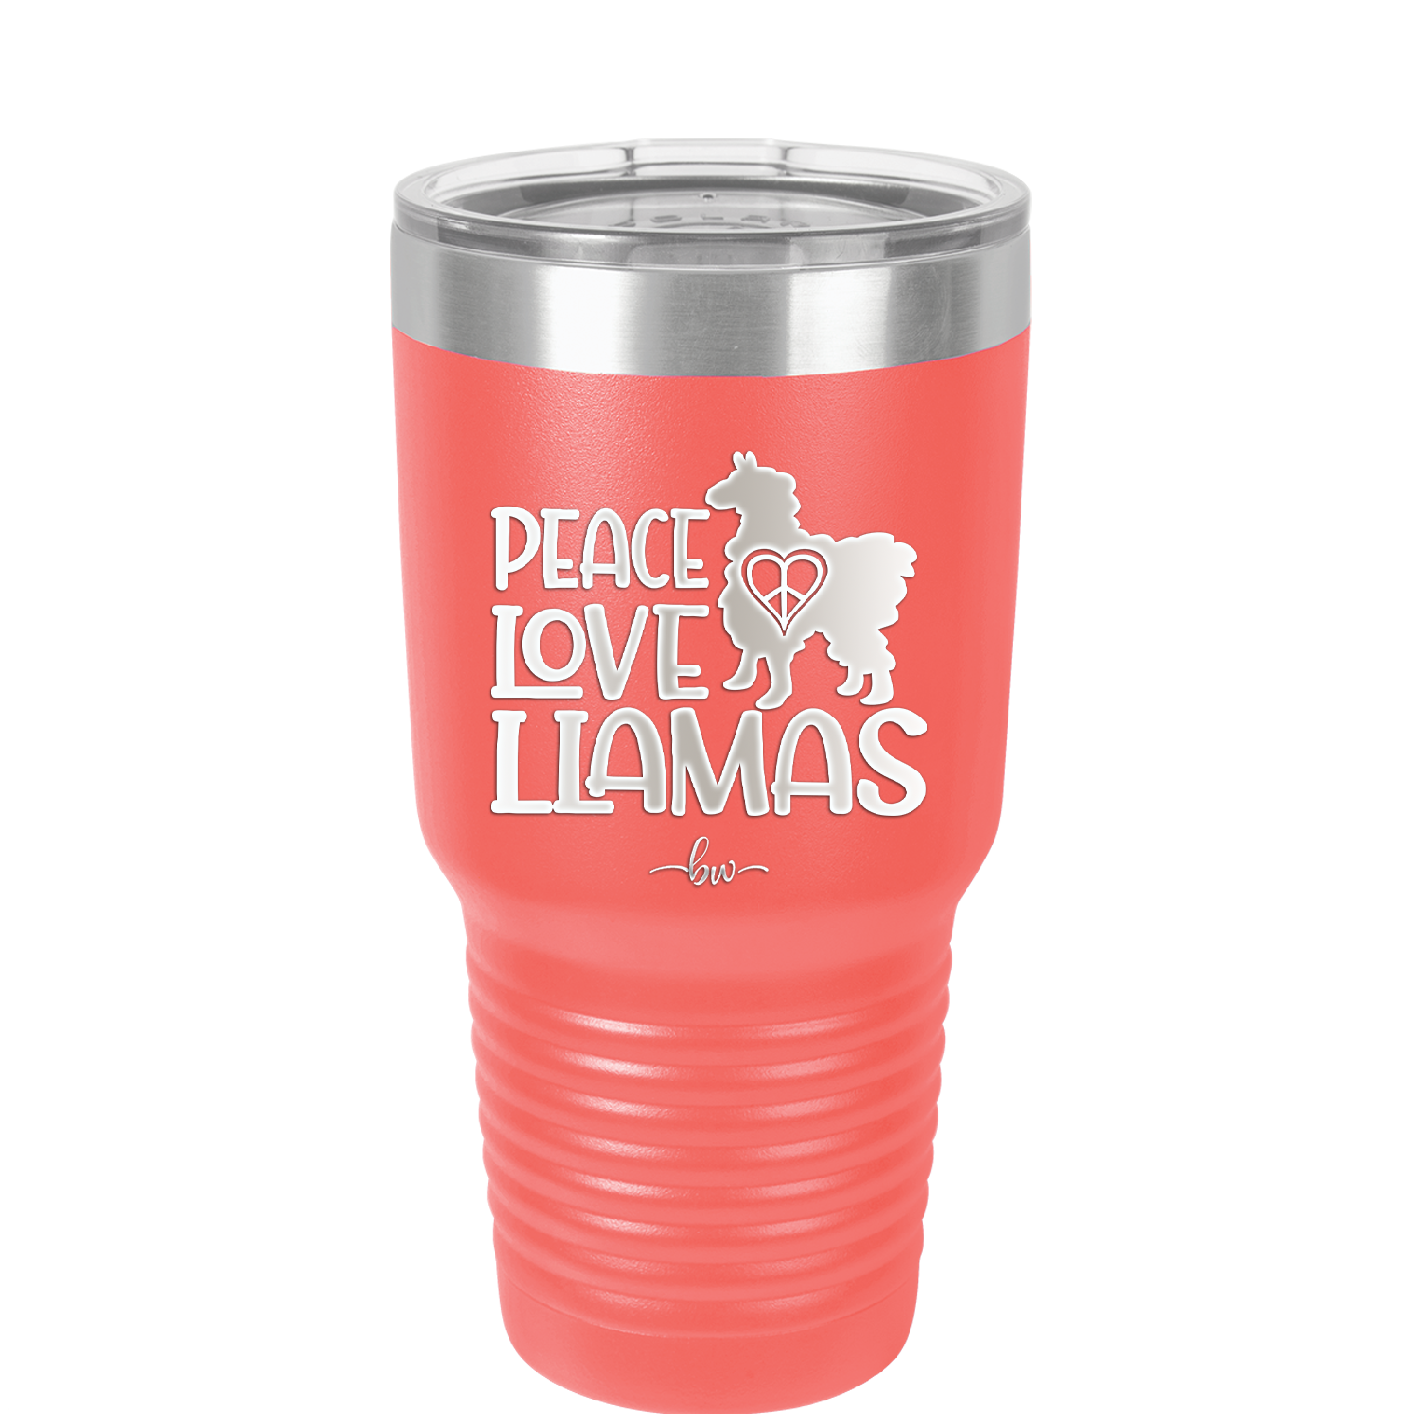 Peace Love Llamas - Laser Engraved Stainless Steel Drinkware - 1870 -